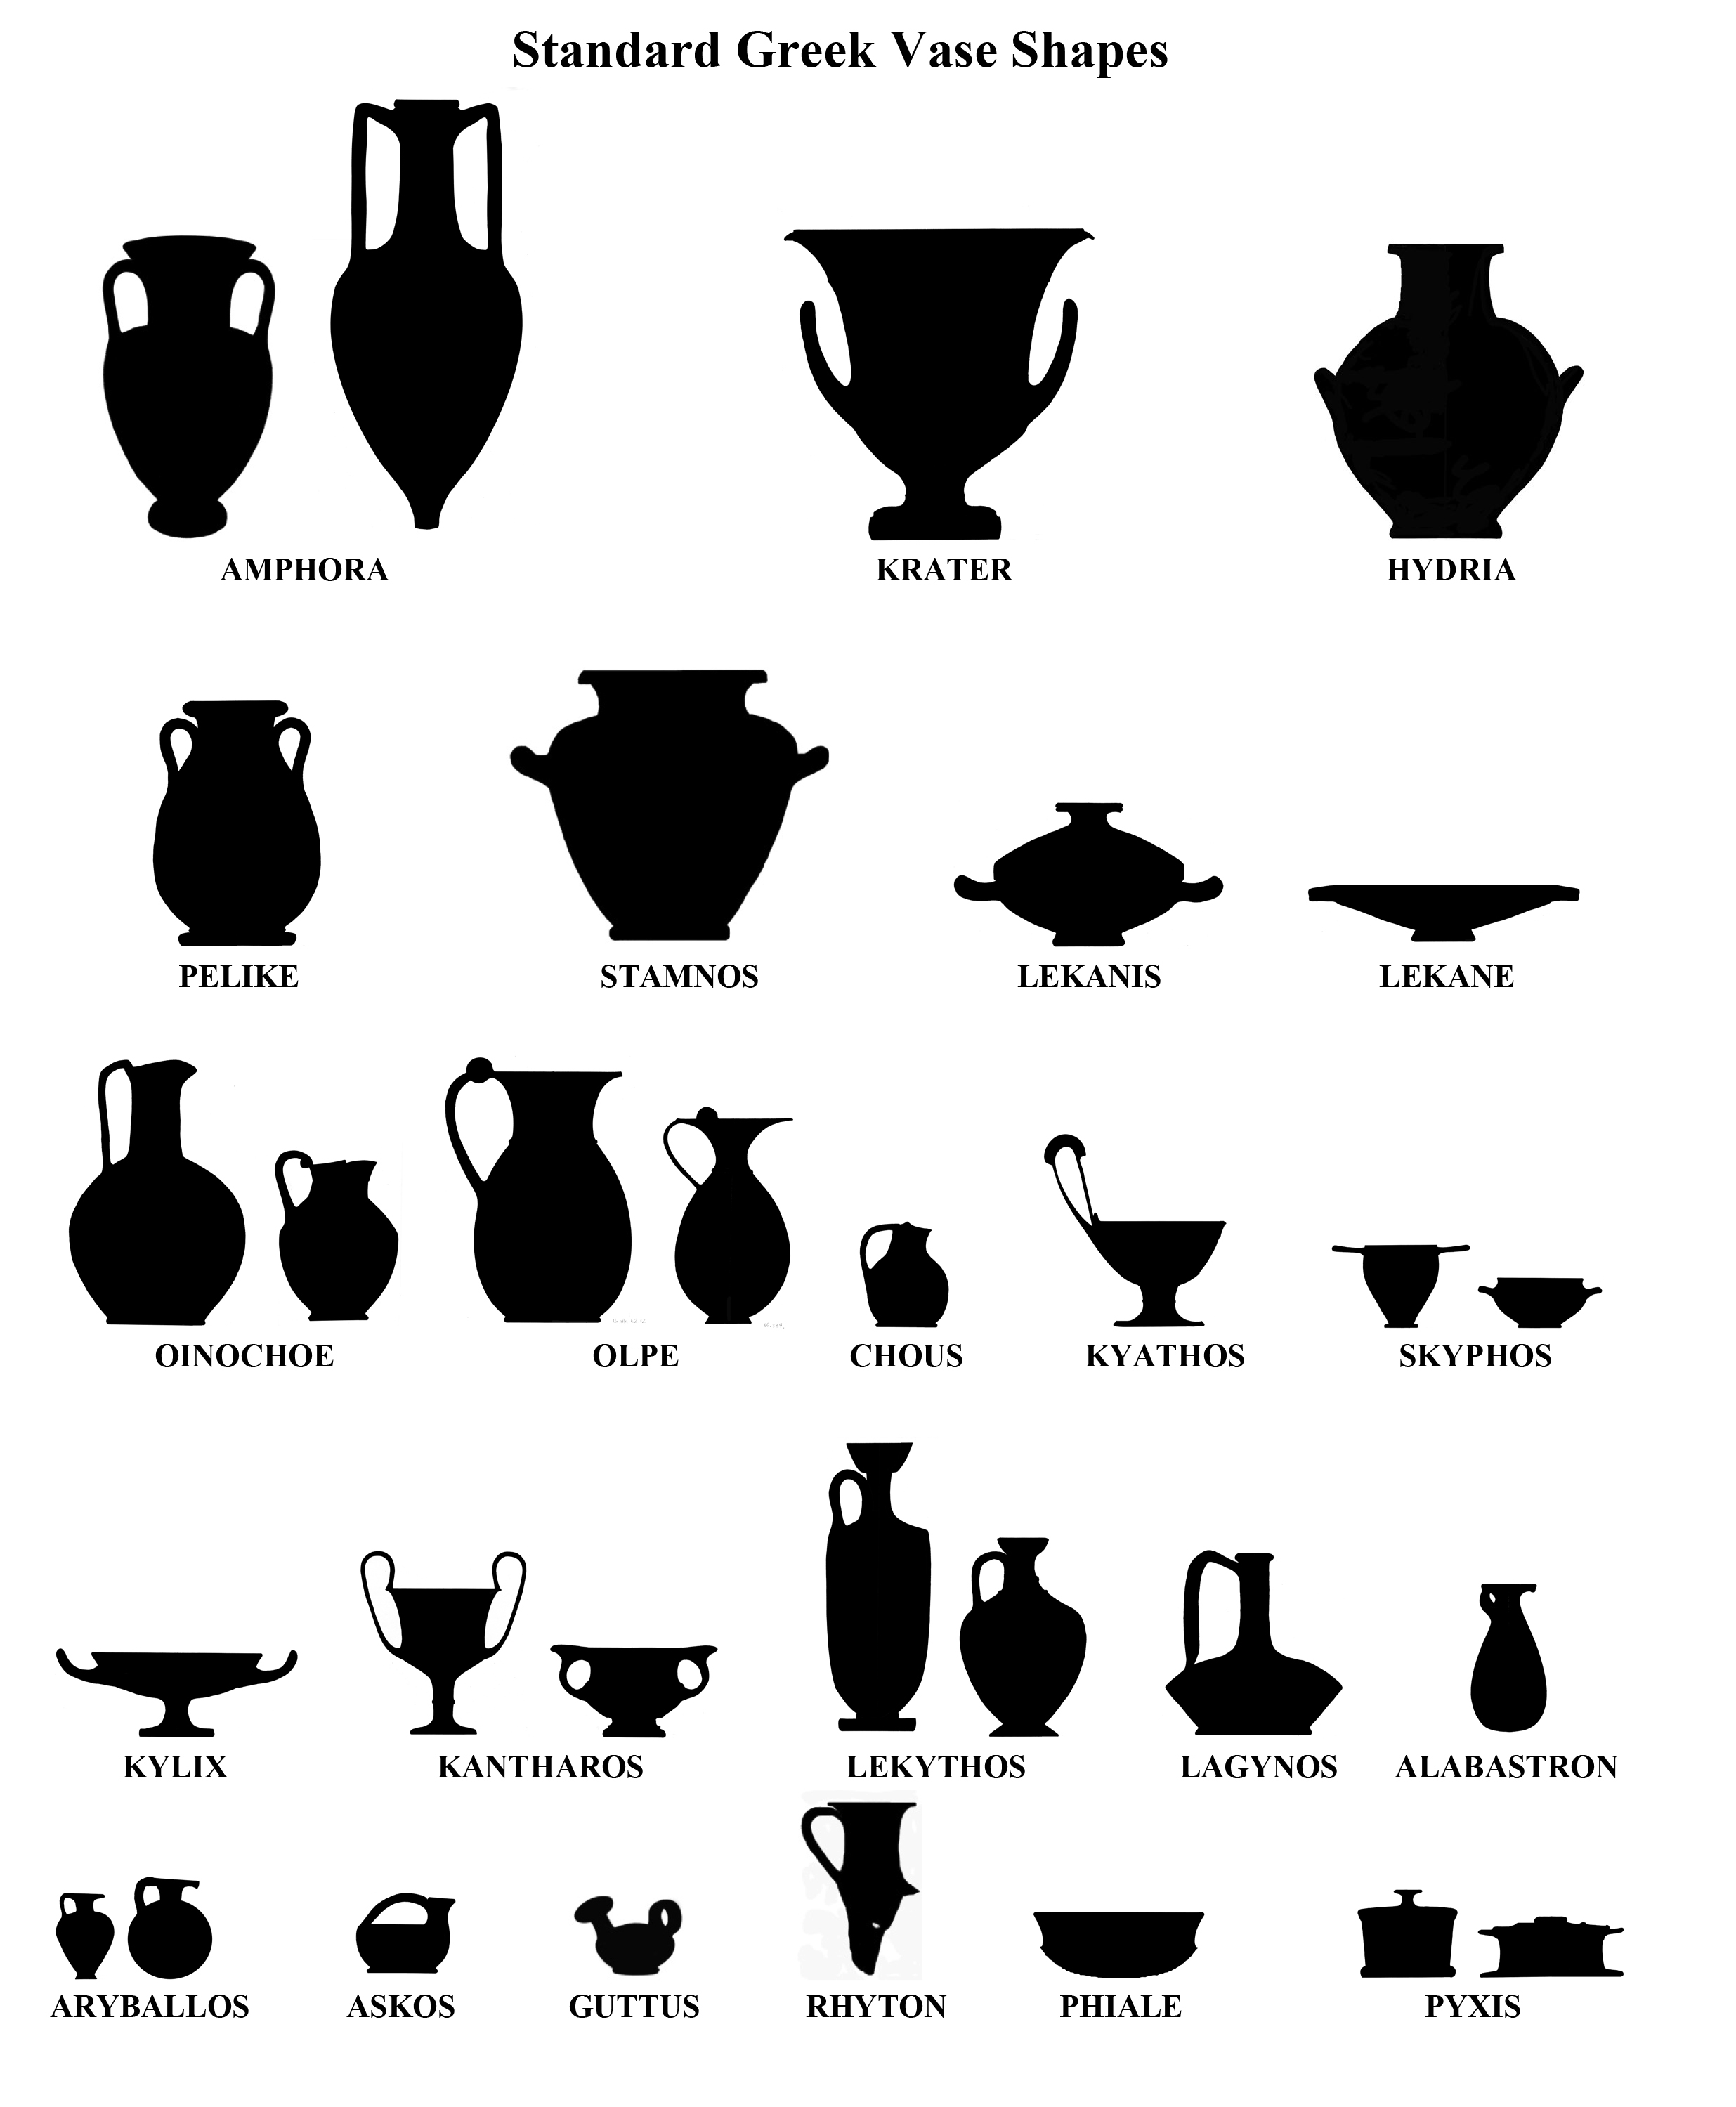 Vase shapes